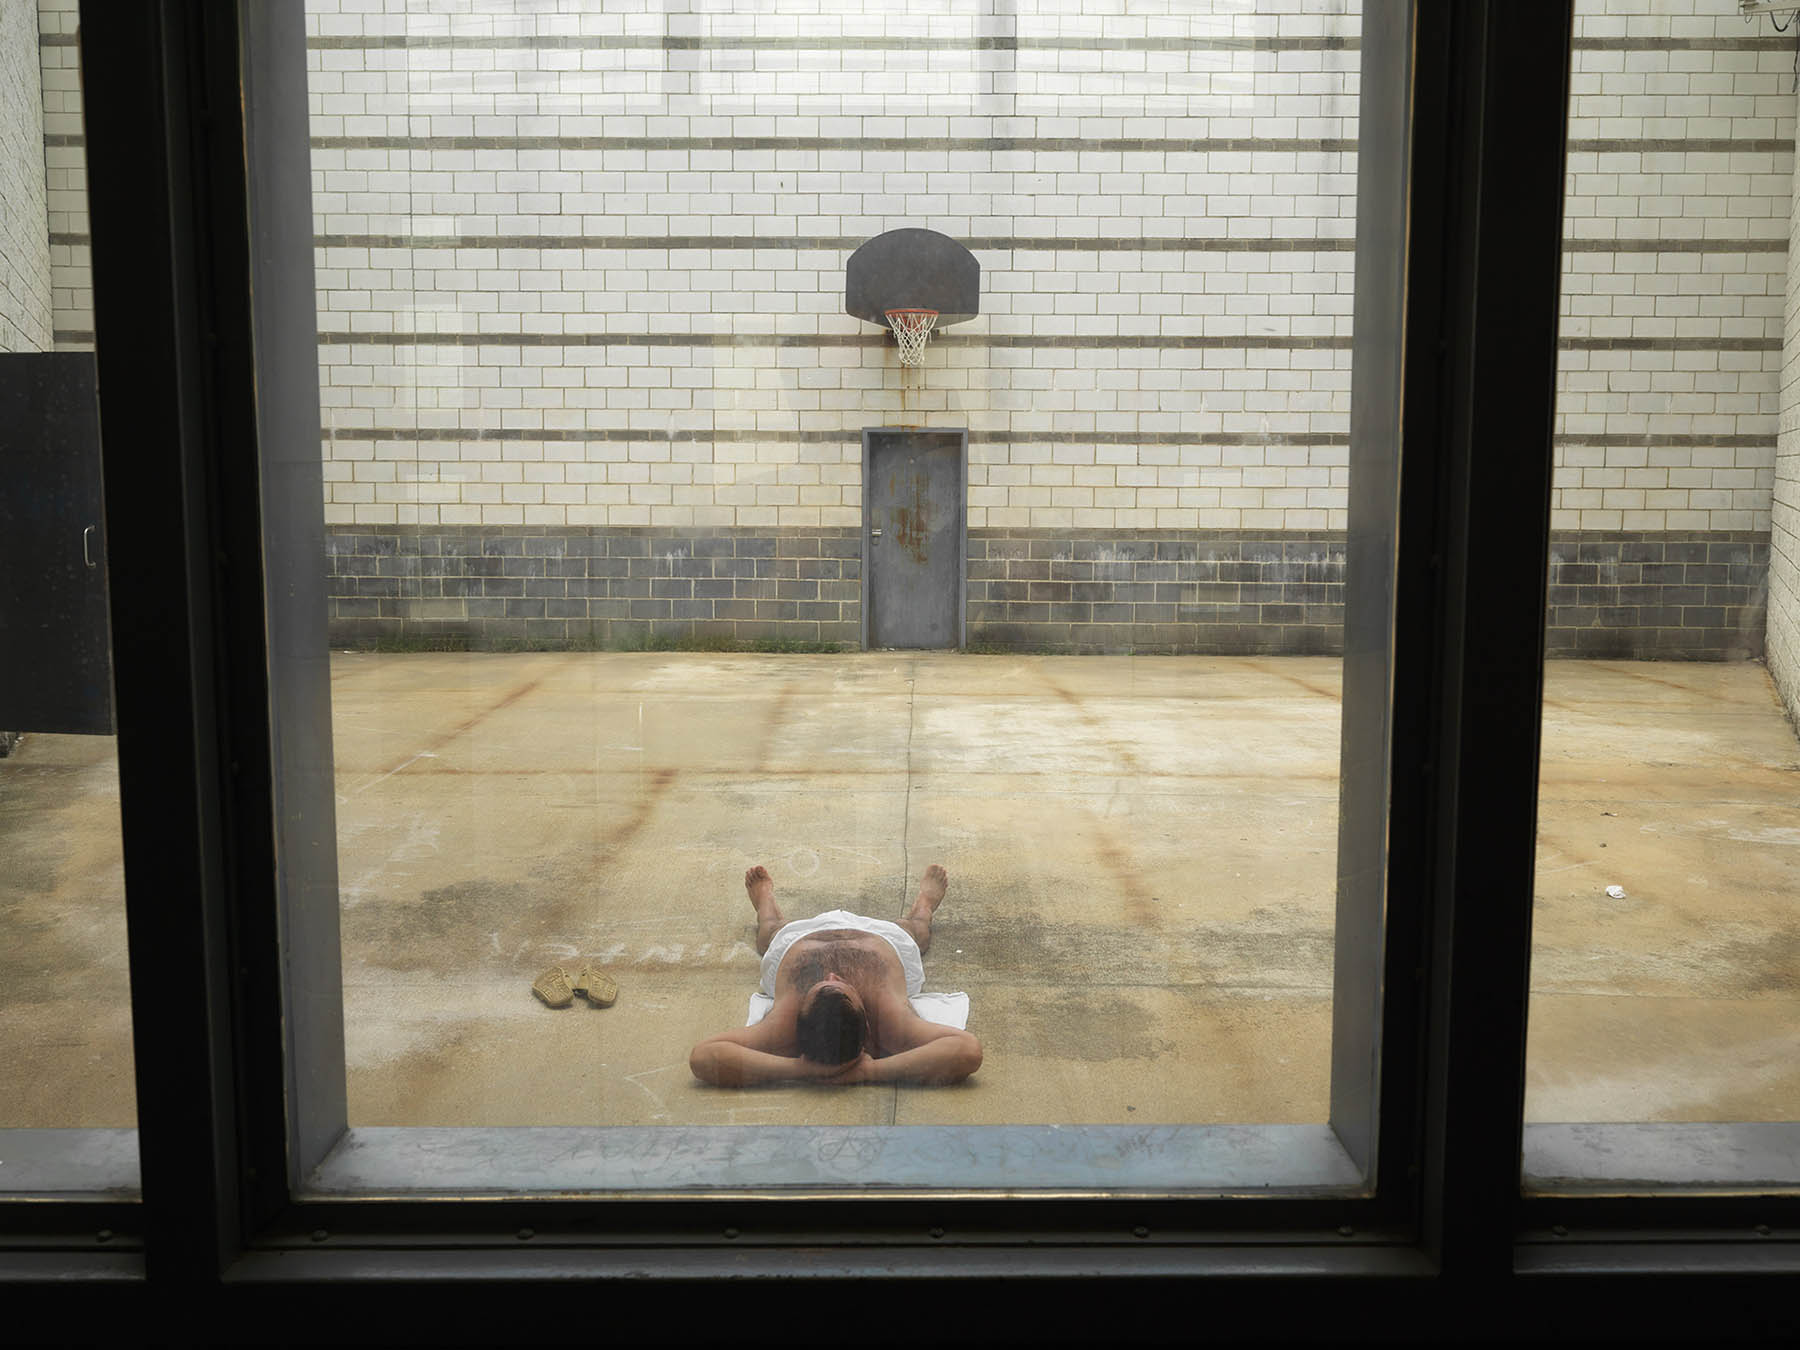 USA, GA, June 2012. Sunbathing detainee in courtyard in Putnam County Jail in Eatonton.USA, Georgia, juni 2012. Zonnenede arrestant op de luchtplaats van het cellenblok van de sheriff's politiebureau van Putnam County in Eatonton.